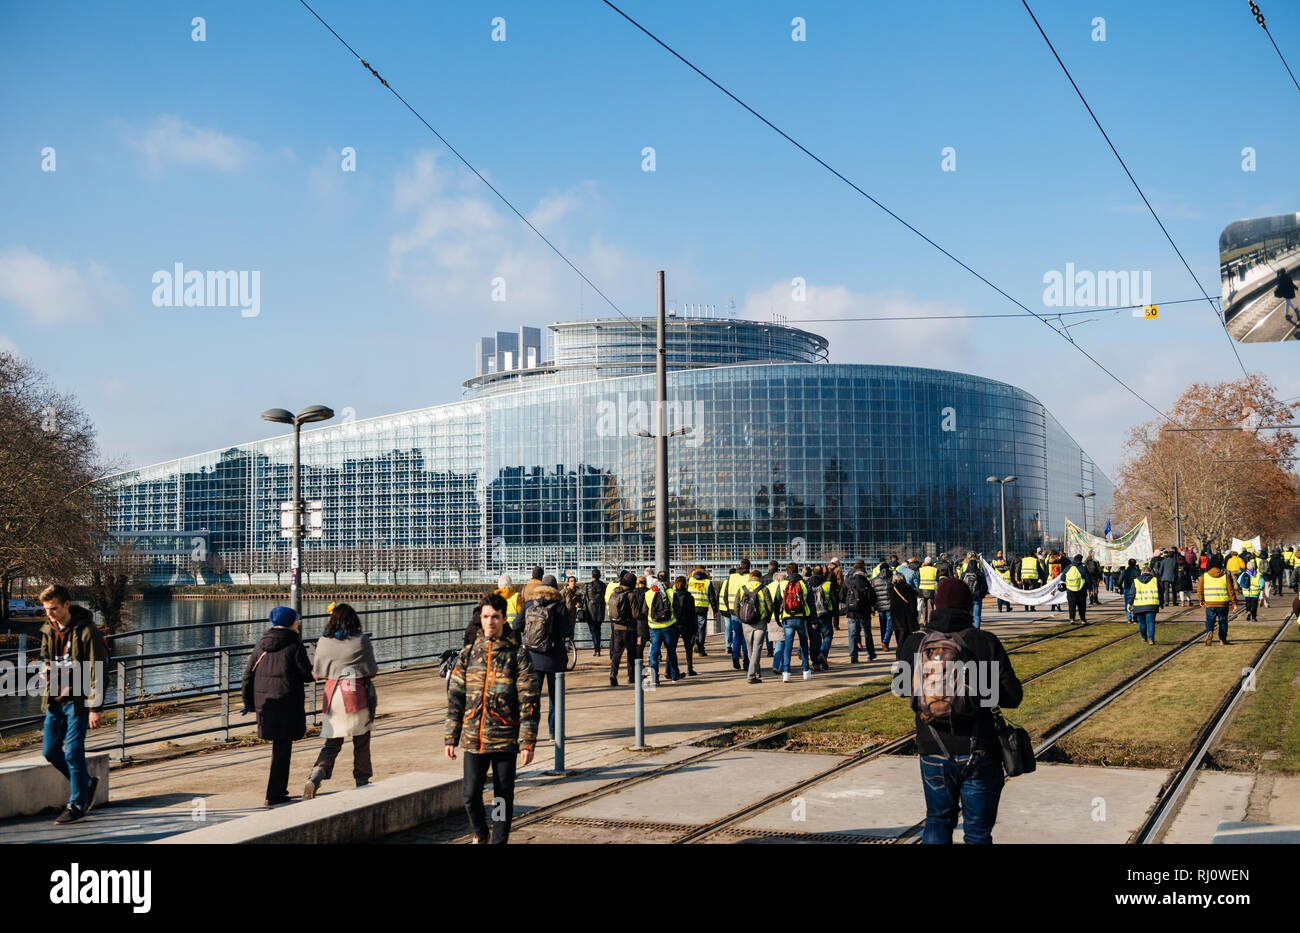 Straßburg, Frankreich - Feb 02, 2018: die Menschen, die auf dem Weg zum Europäischen Parlament während Protest der Gilets Jaunes gelbe Weste Manifestation gegen die Regierung gerichteten Demonstrationen Stockfoto